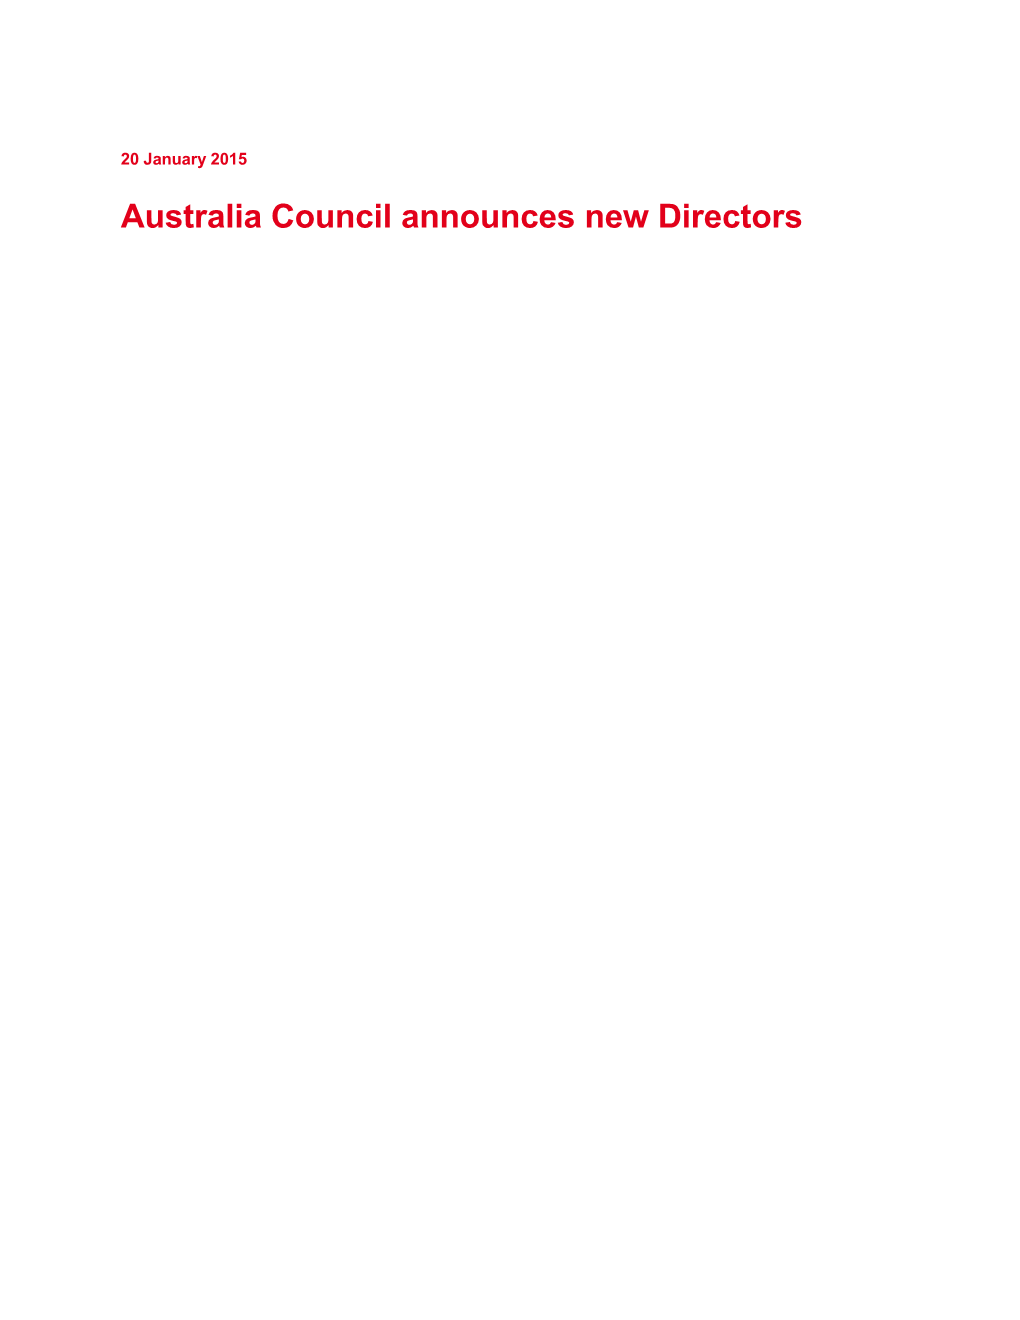 Australia Council Announces New Directors